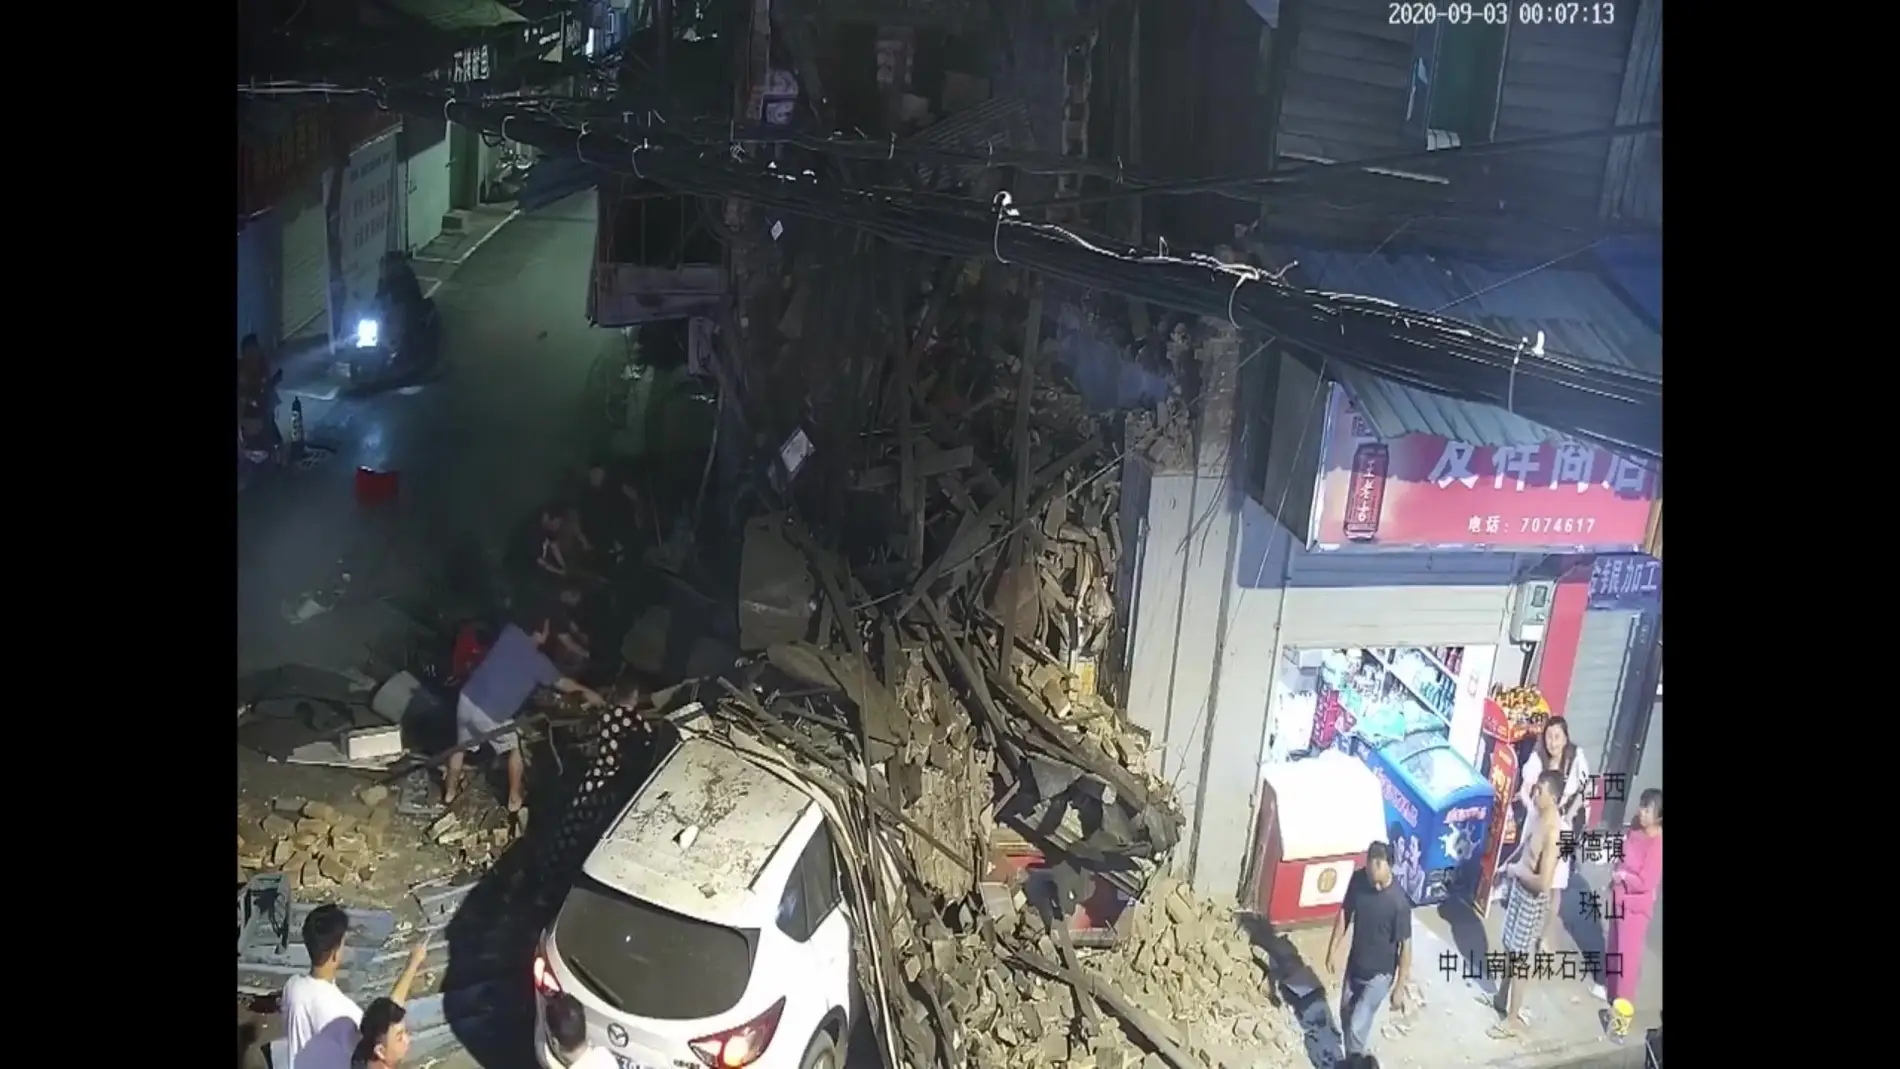 Un coche destroza una tienda al chocar con ella y provoca dos heridos